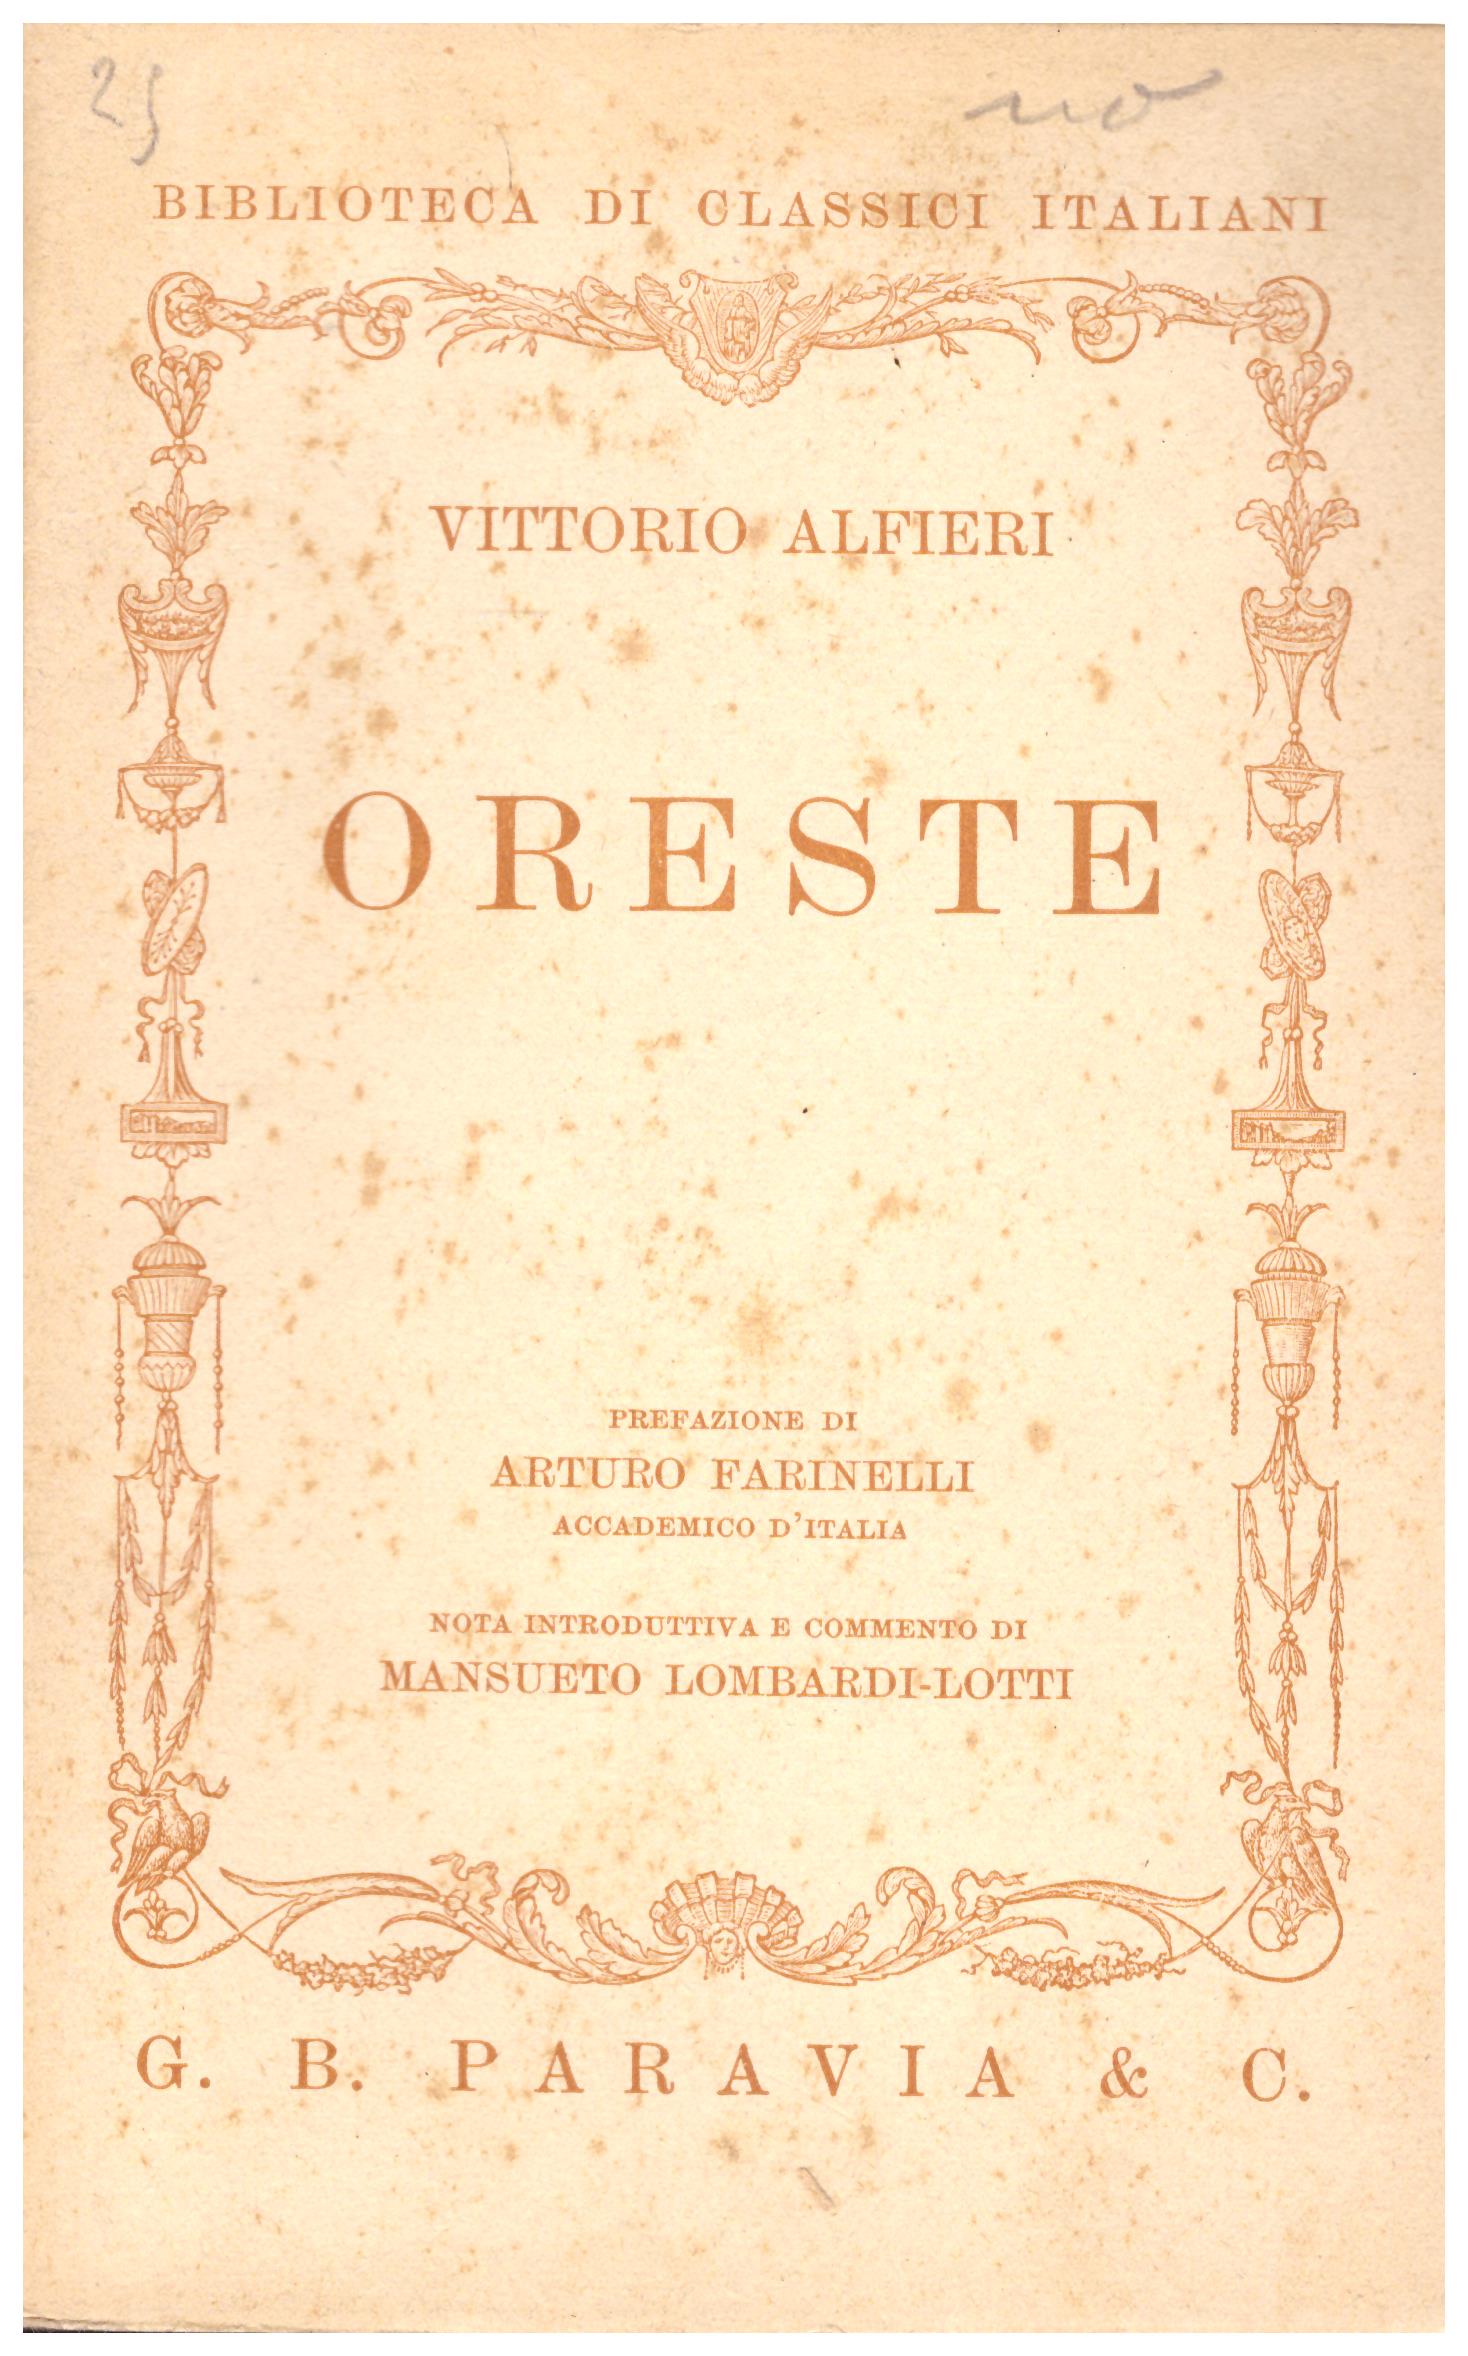 Titolo: Oreste     Autore: Vittorio Alfieri, prefazione di Arturo Farinelli    Editore: Paravia, Torino 1937